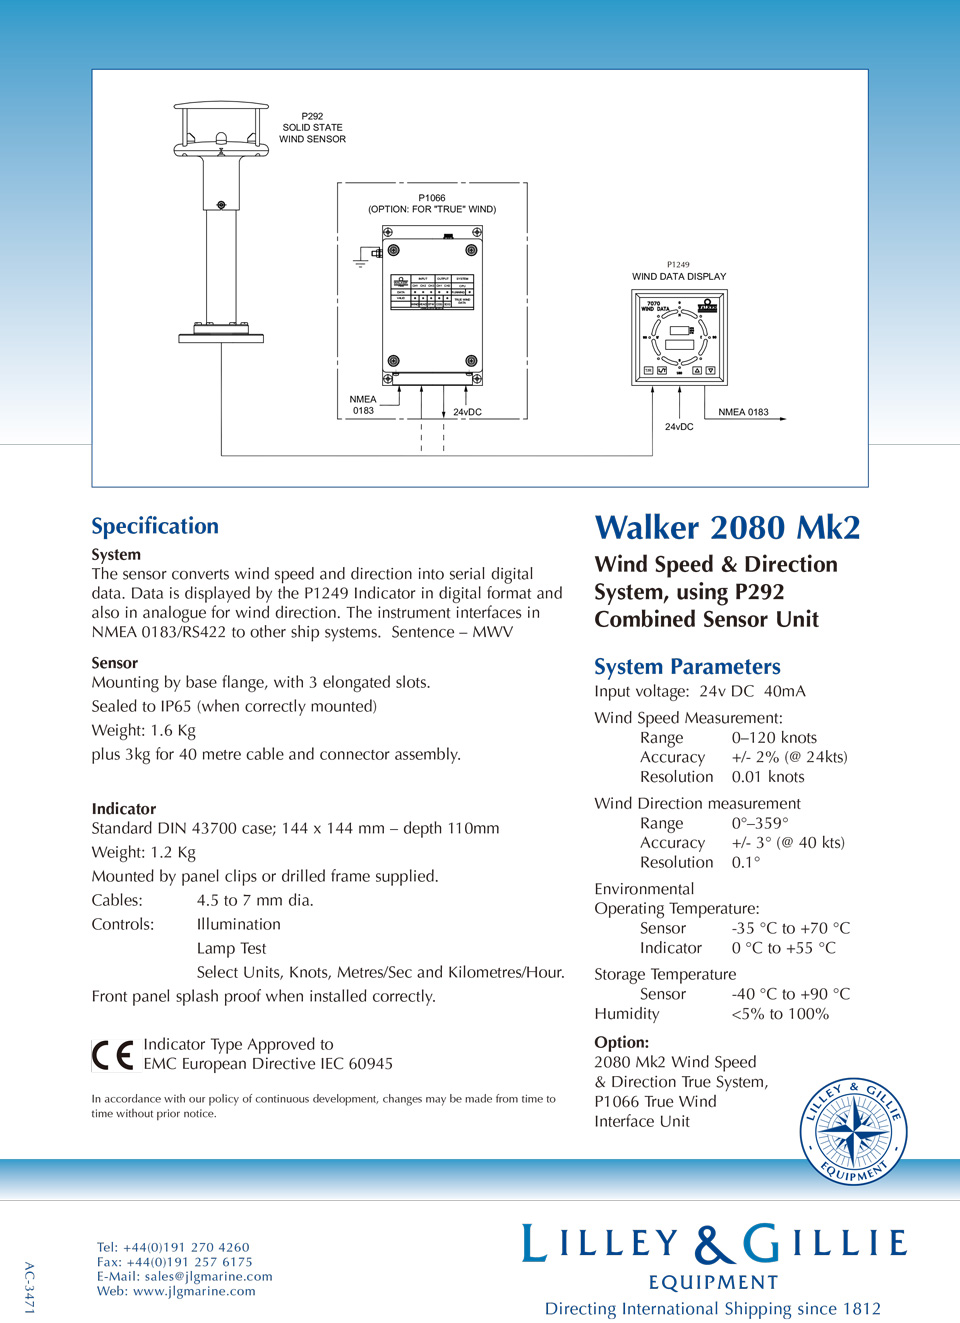 Walker 2080 Mk2